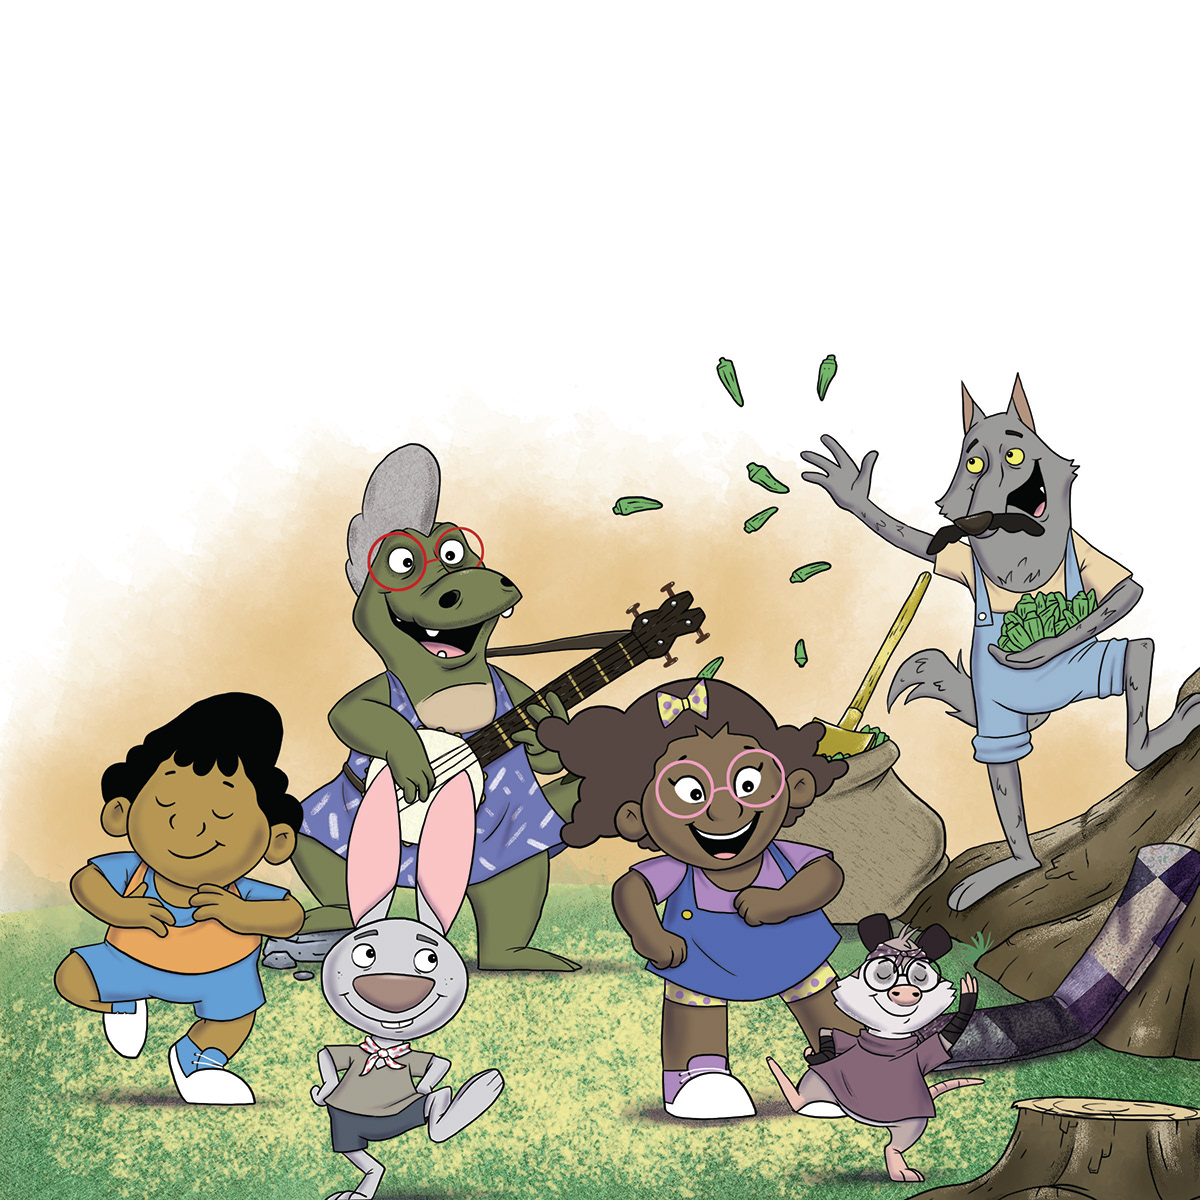 Character kids cute diverse Multi-cultural cartoon design book children